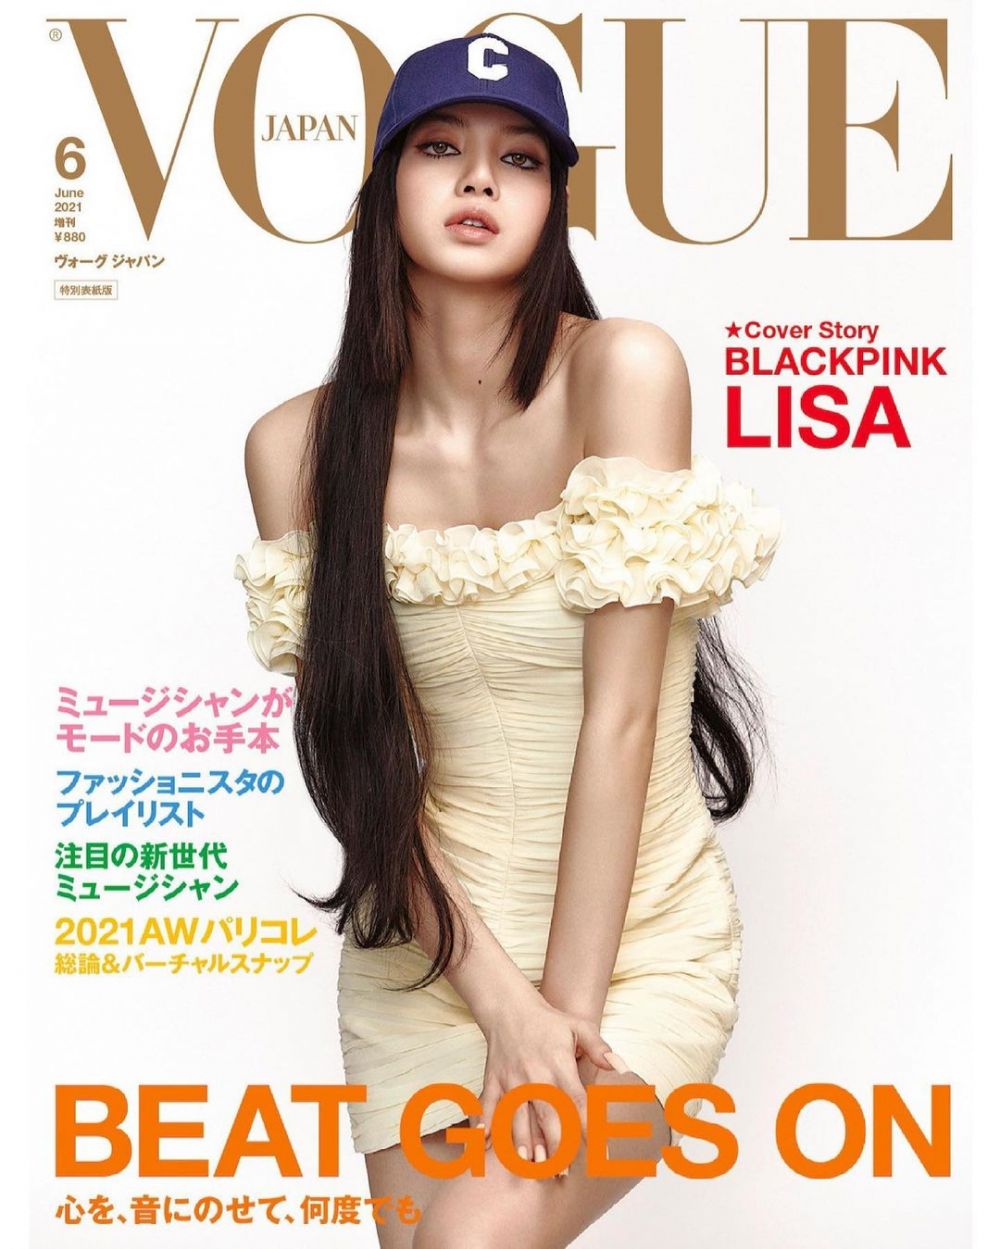 9 Potret Lisa Blackpink Di Majalah Vogue Jepang Juni 2021 